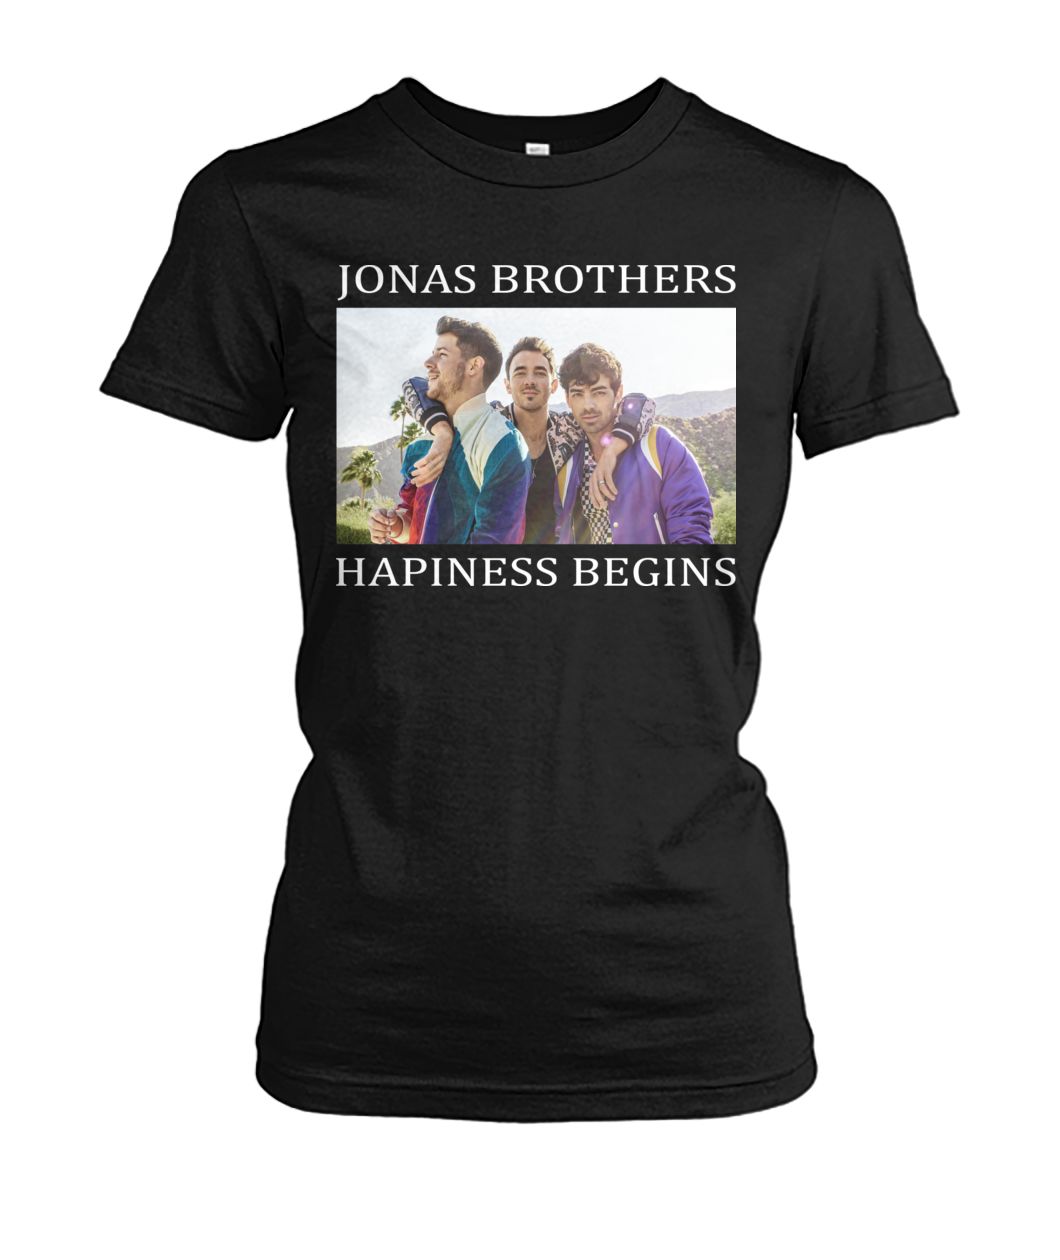 Jonas brothers happiness begins women's crew tee